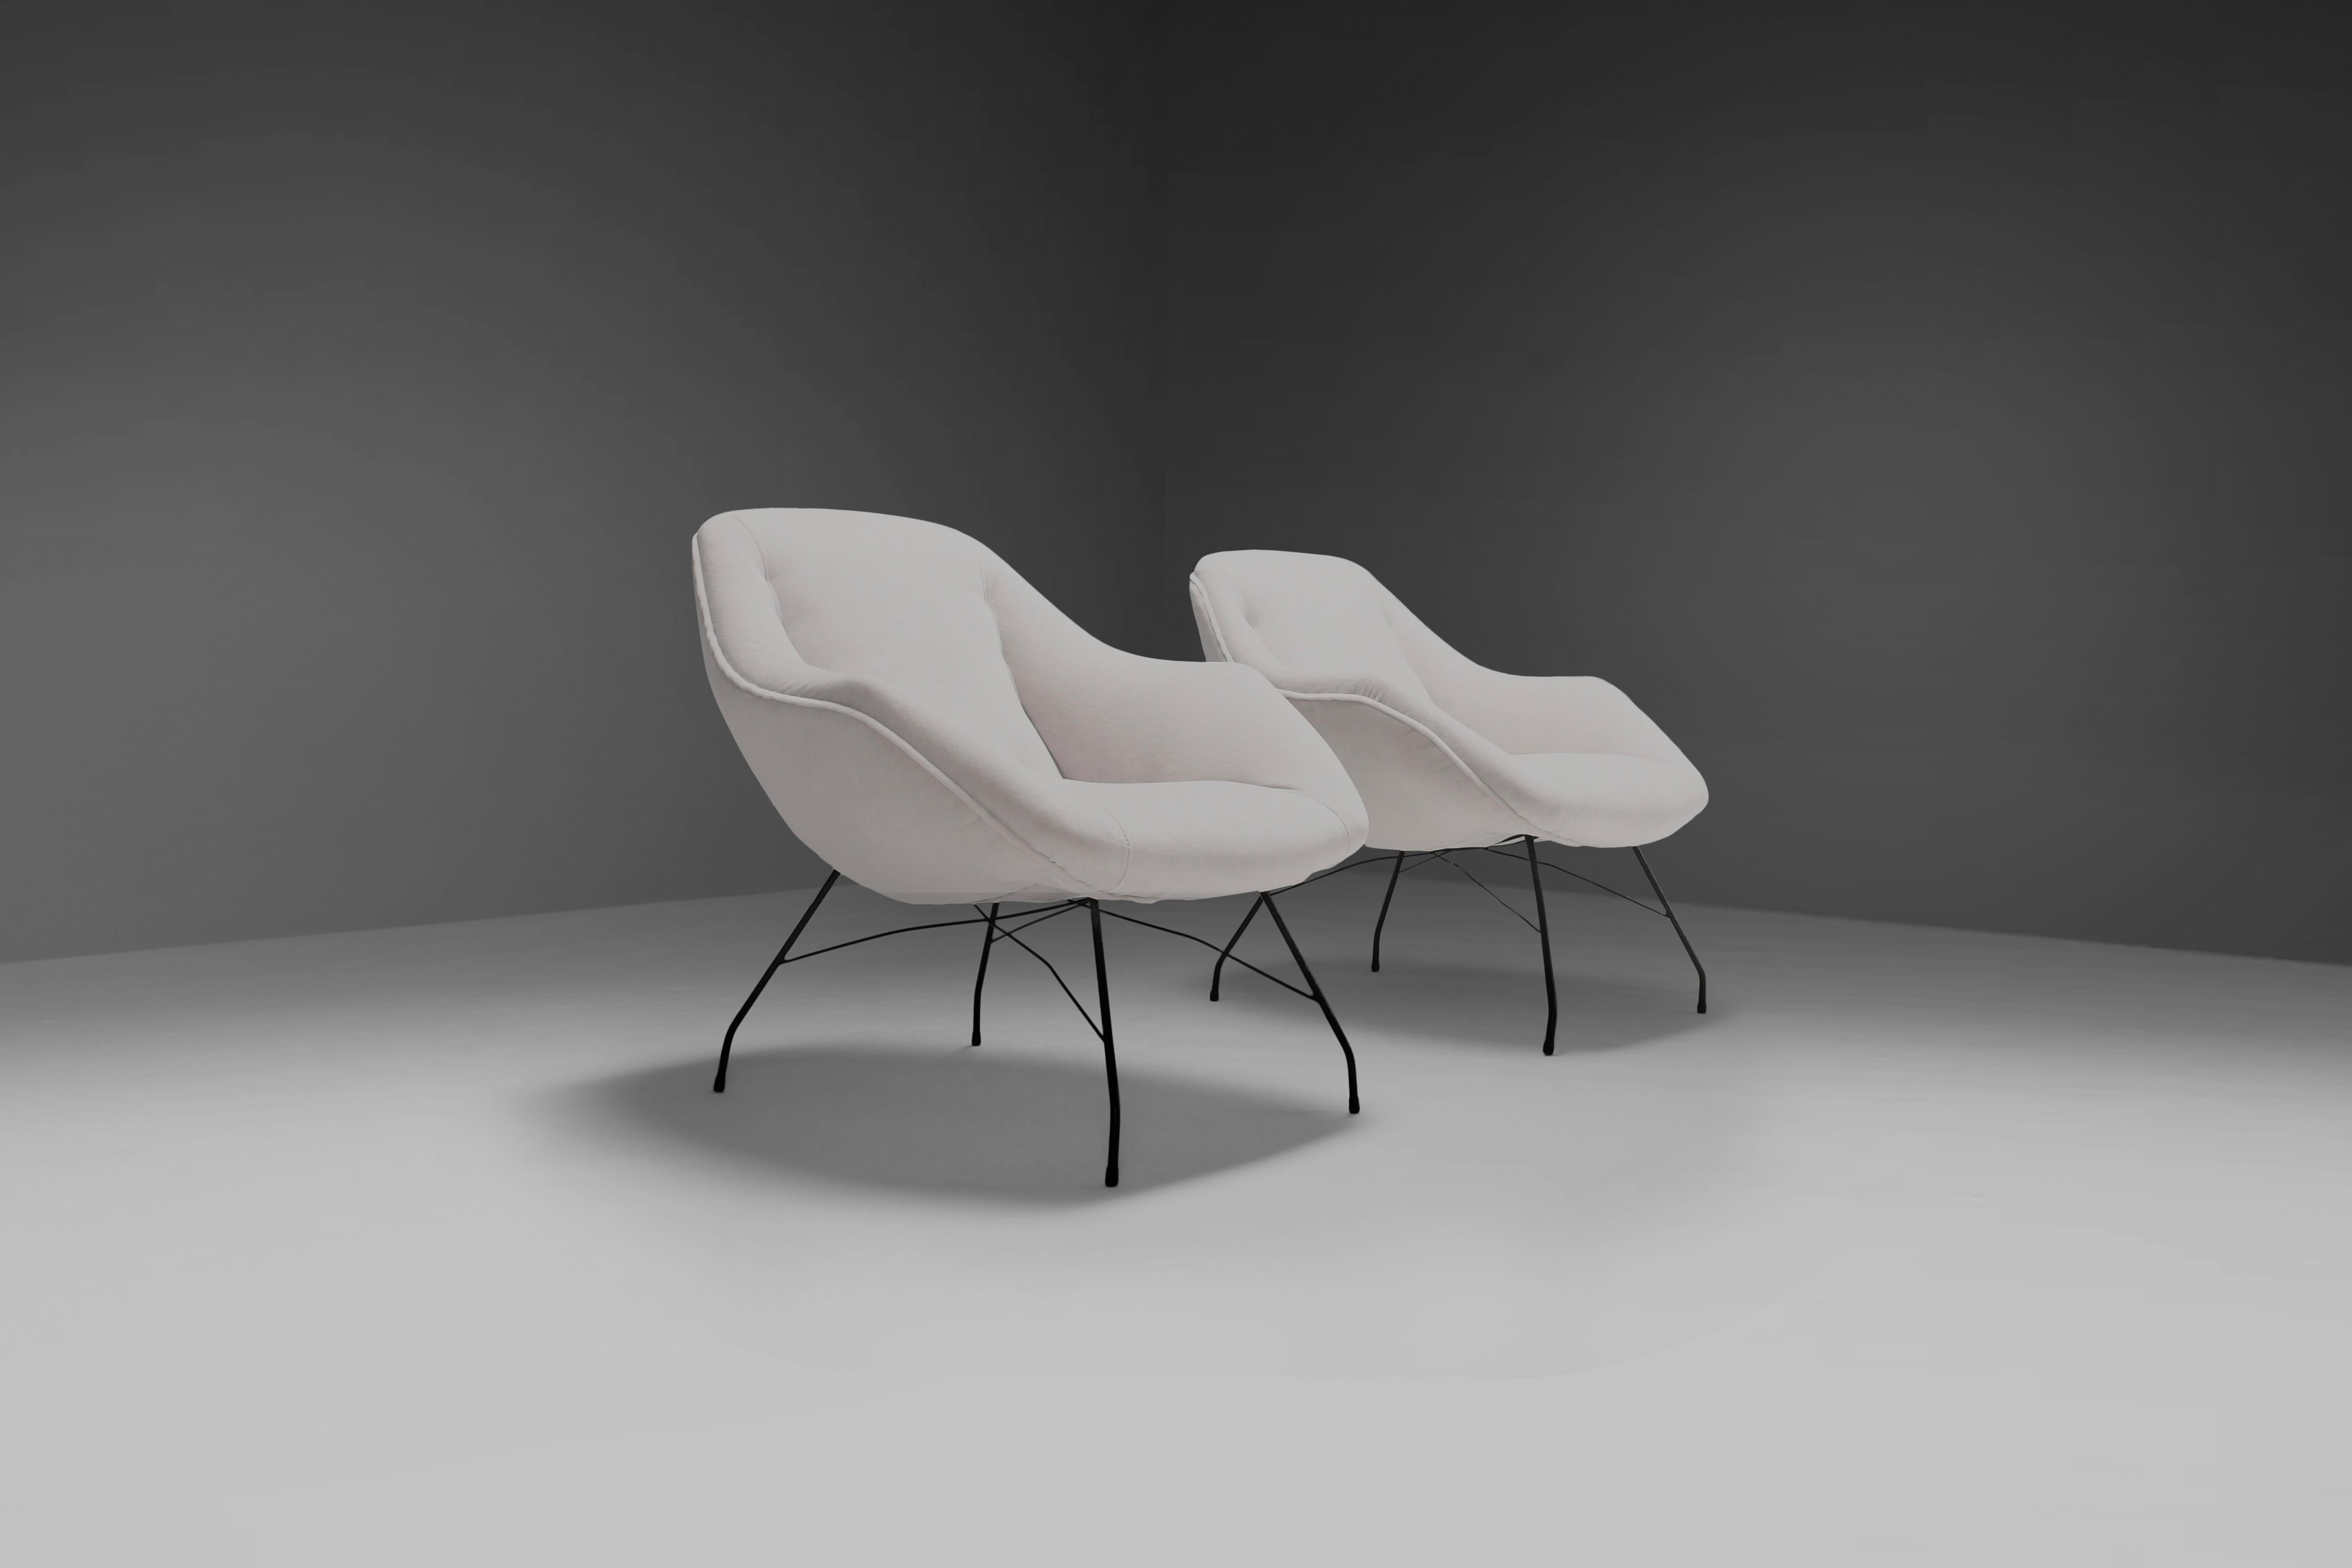 Ensemble de chaises 'Condit' en très bon état.

Design/One par Carlo Hauner et Martin Eisler en 1955

Fabriqué par Forma Moveis, Brésil

Les chaises sont dotées d'une solide armature en métal de couleur noire.

La coque est recouverte d'un épais